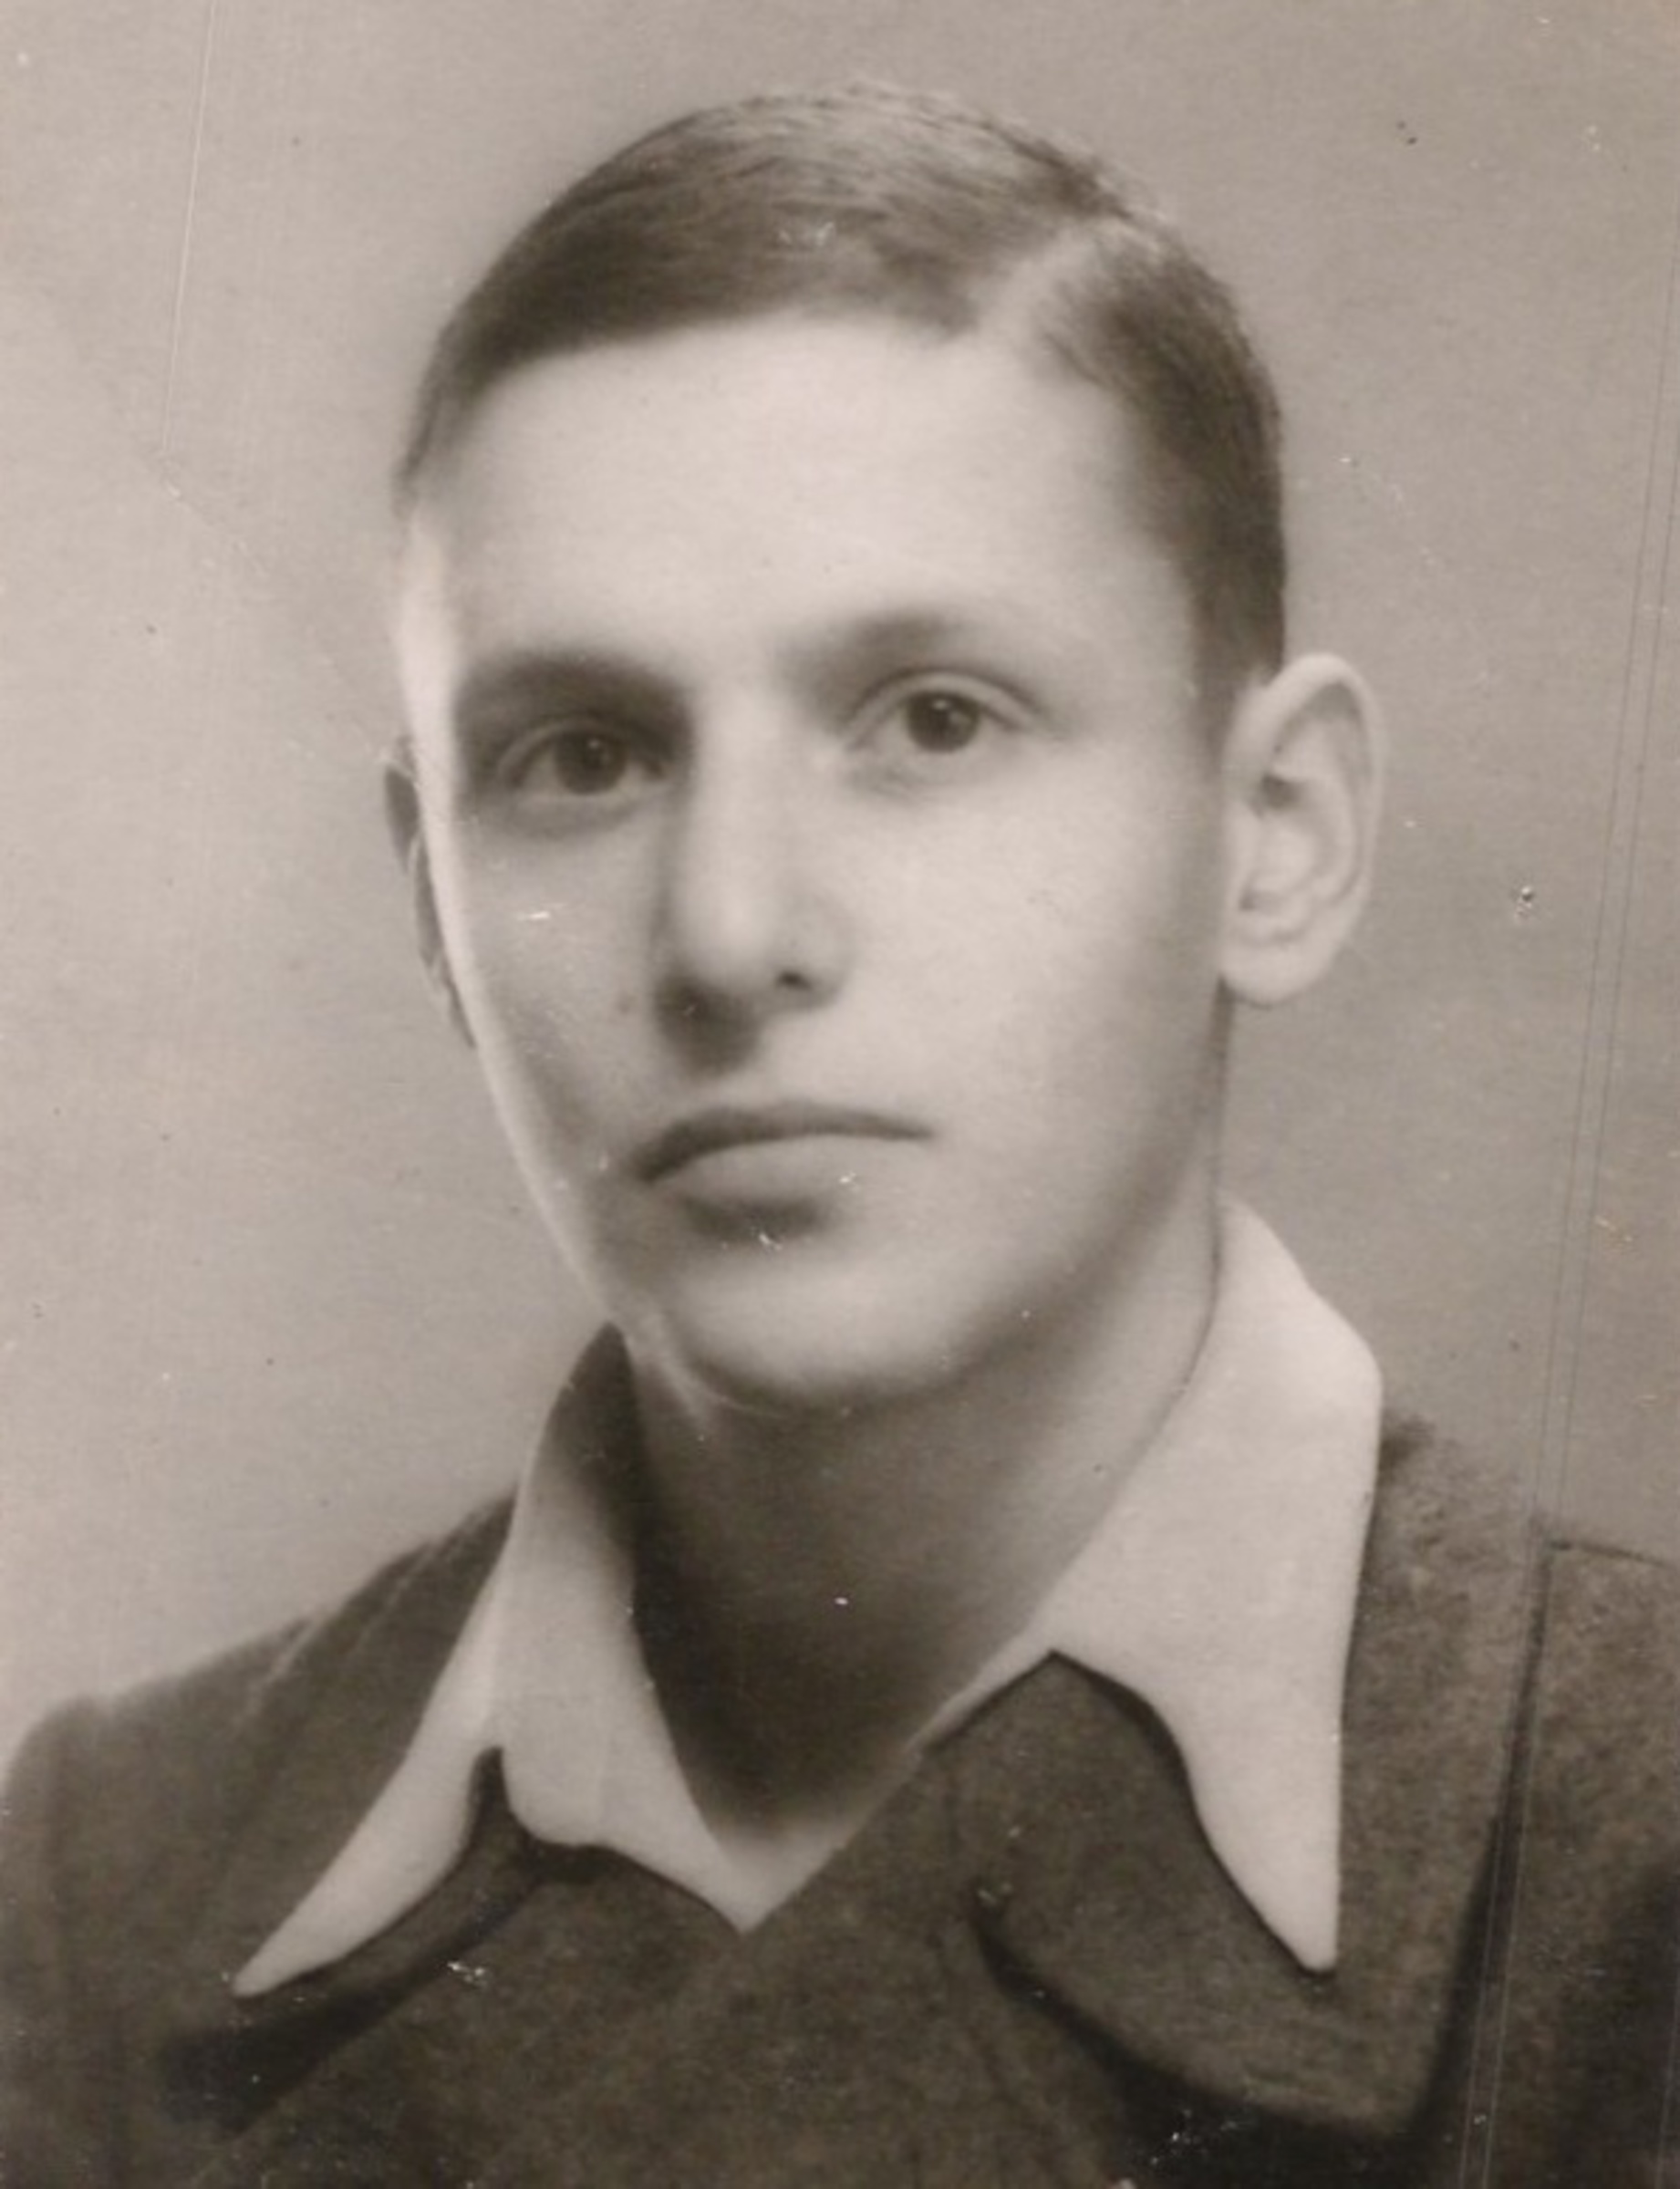 Max Lieben po návratu z koncentračního tábora. 1945